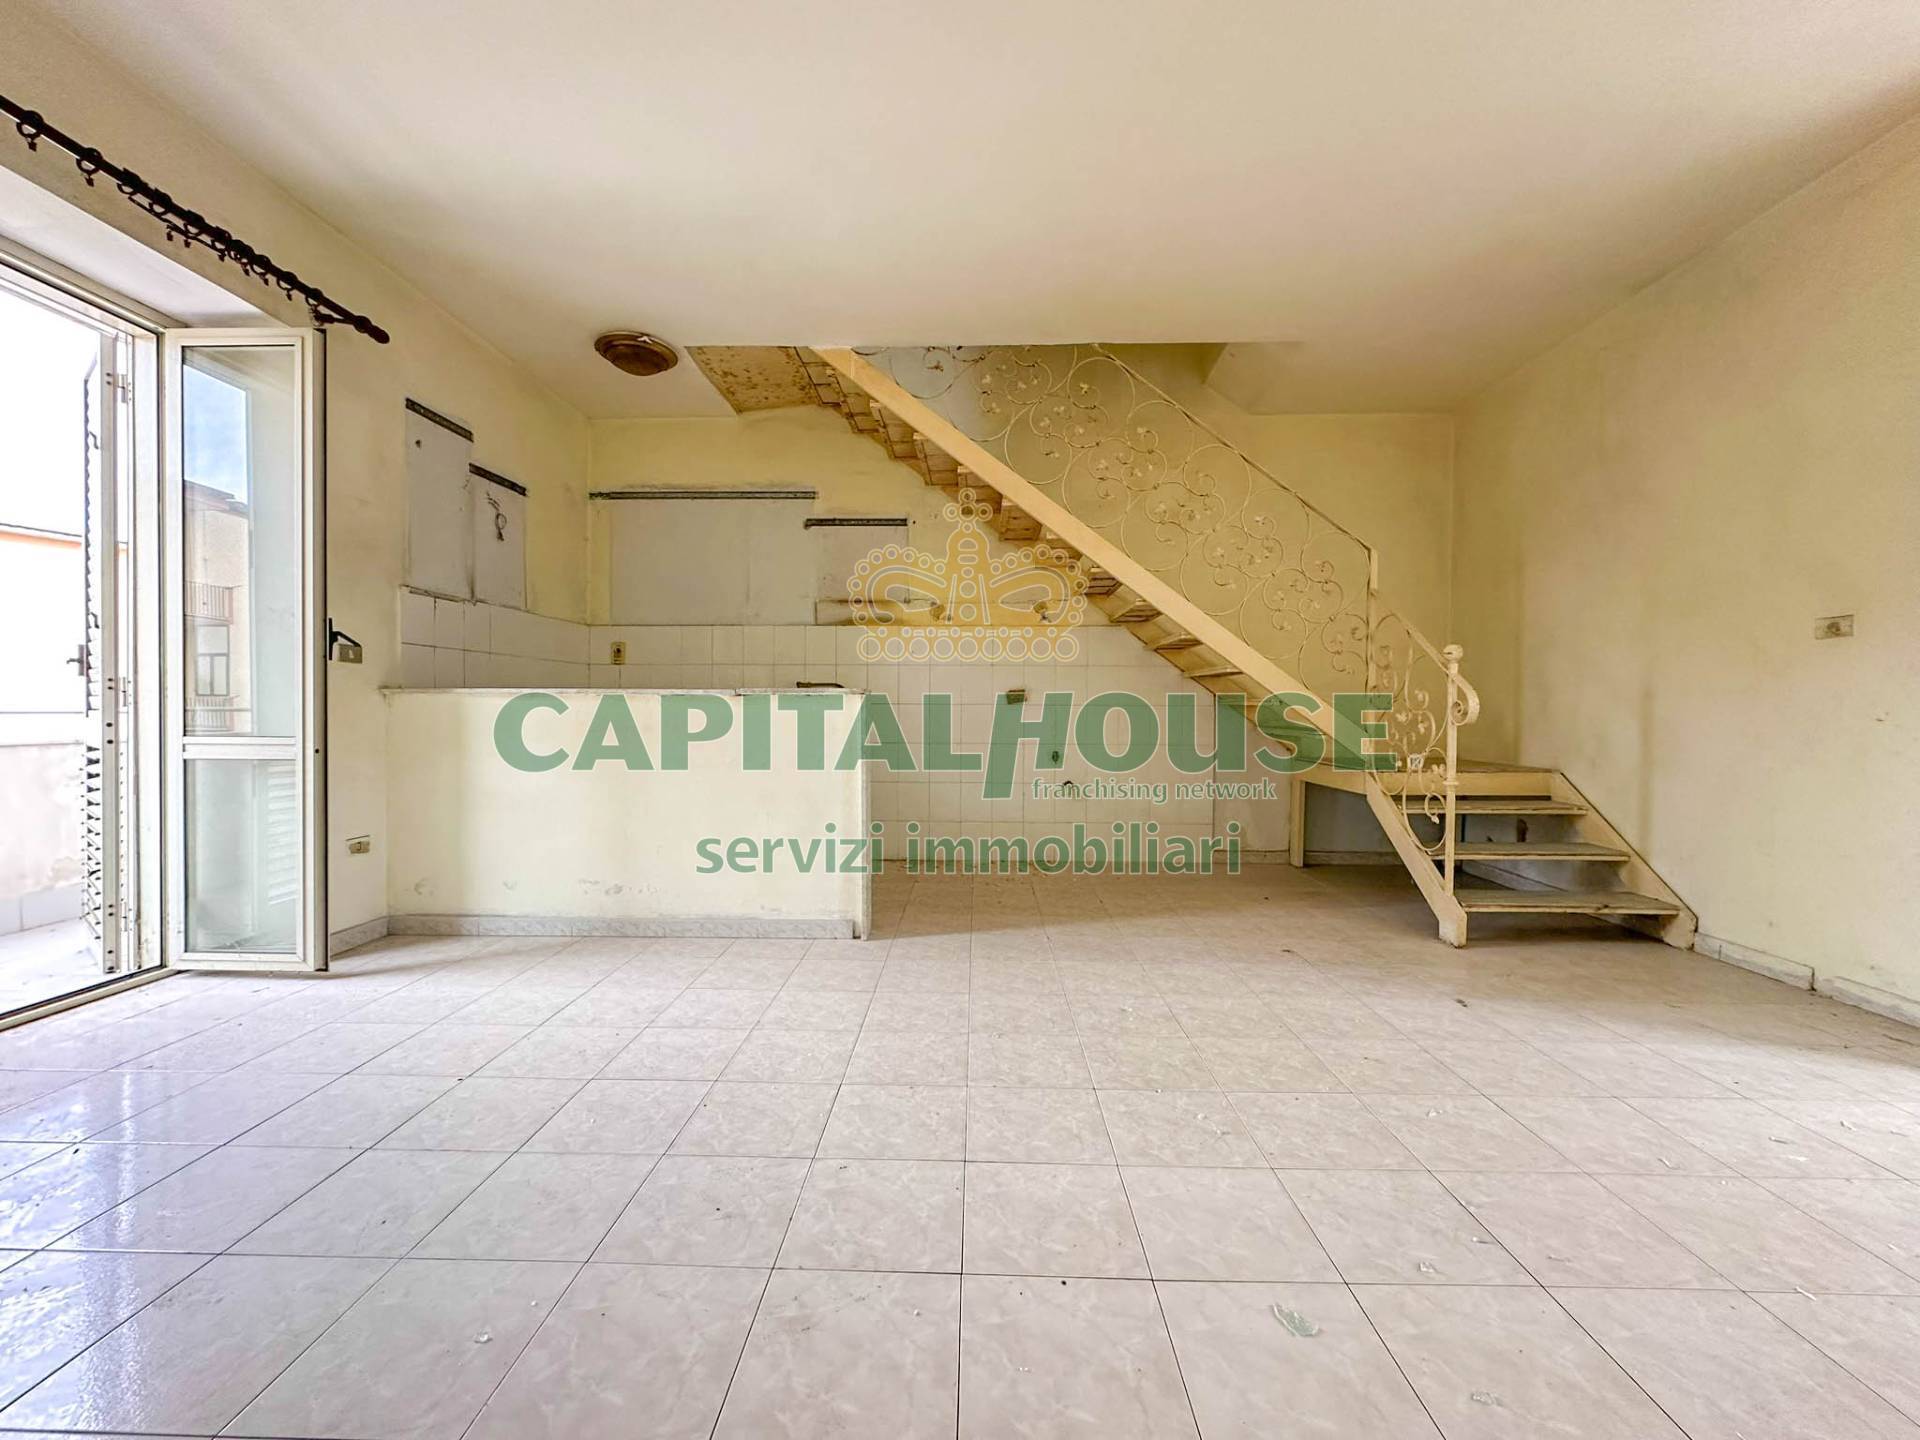 Appartamento in vendita a San Prisco, 2 locali, zona Località: ZonaCentrale, prezzo € 29.000 | PortaleAgenzieImmobiliari.it